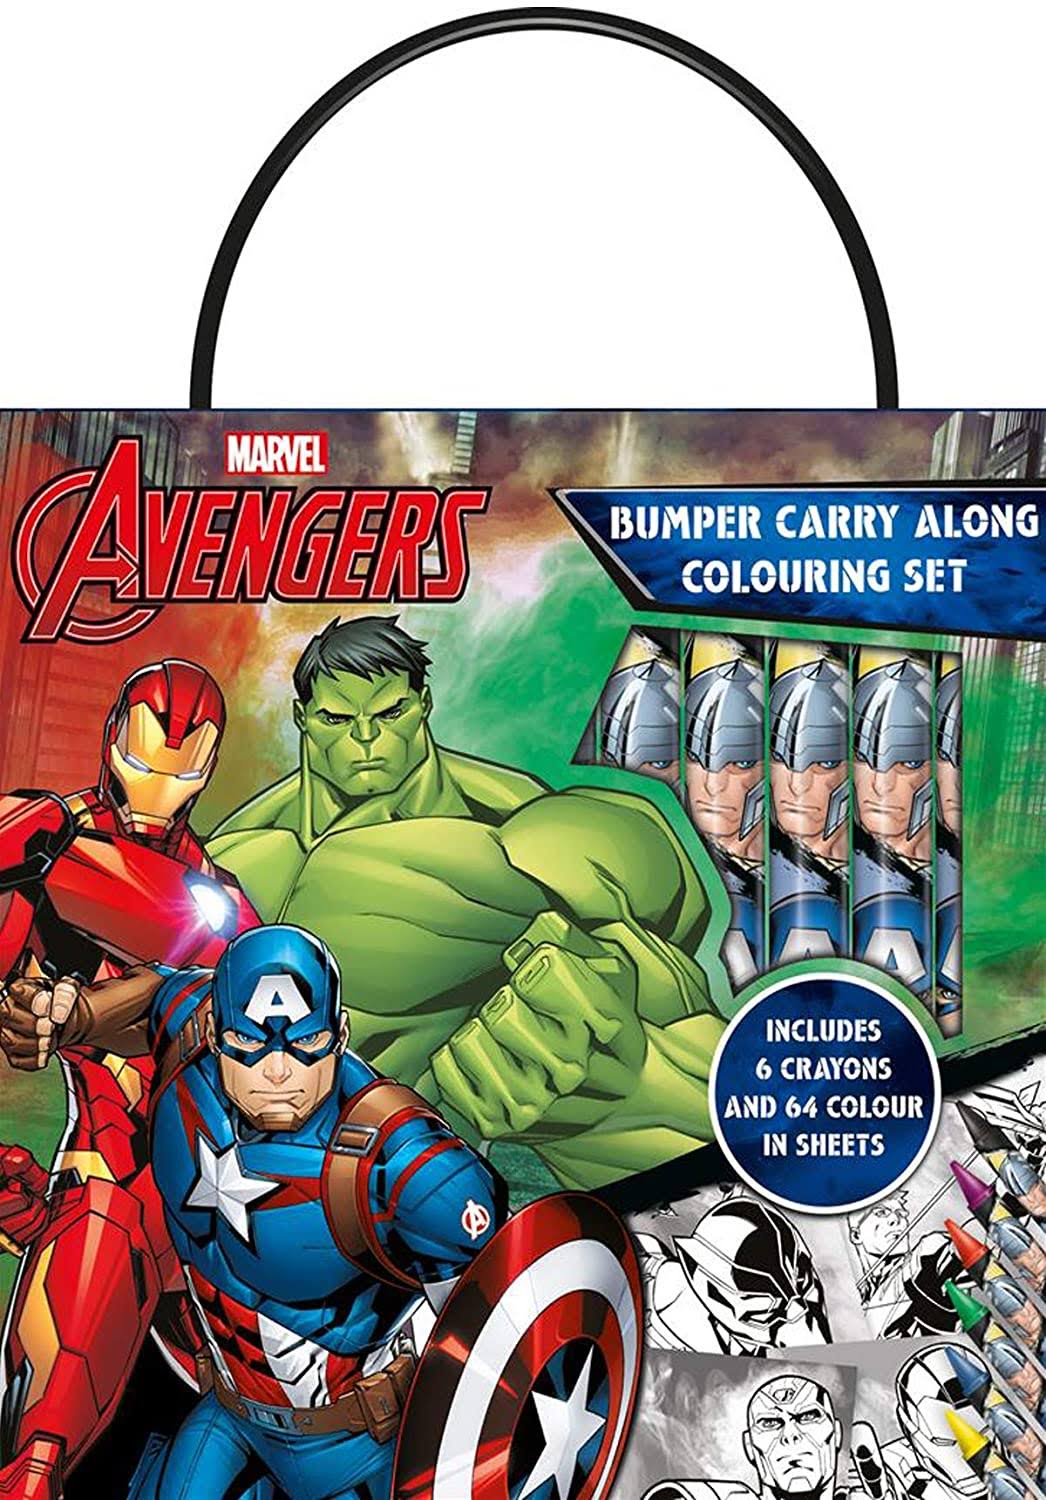 Marvel Avengers AVBCA2 PlayPack, Multi, 1 Count (Pack of 1)